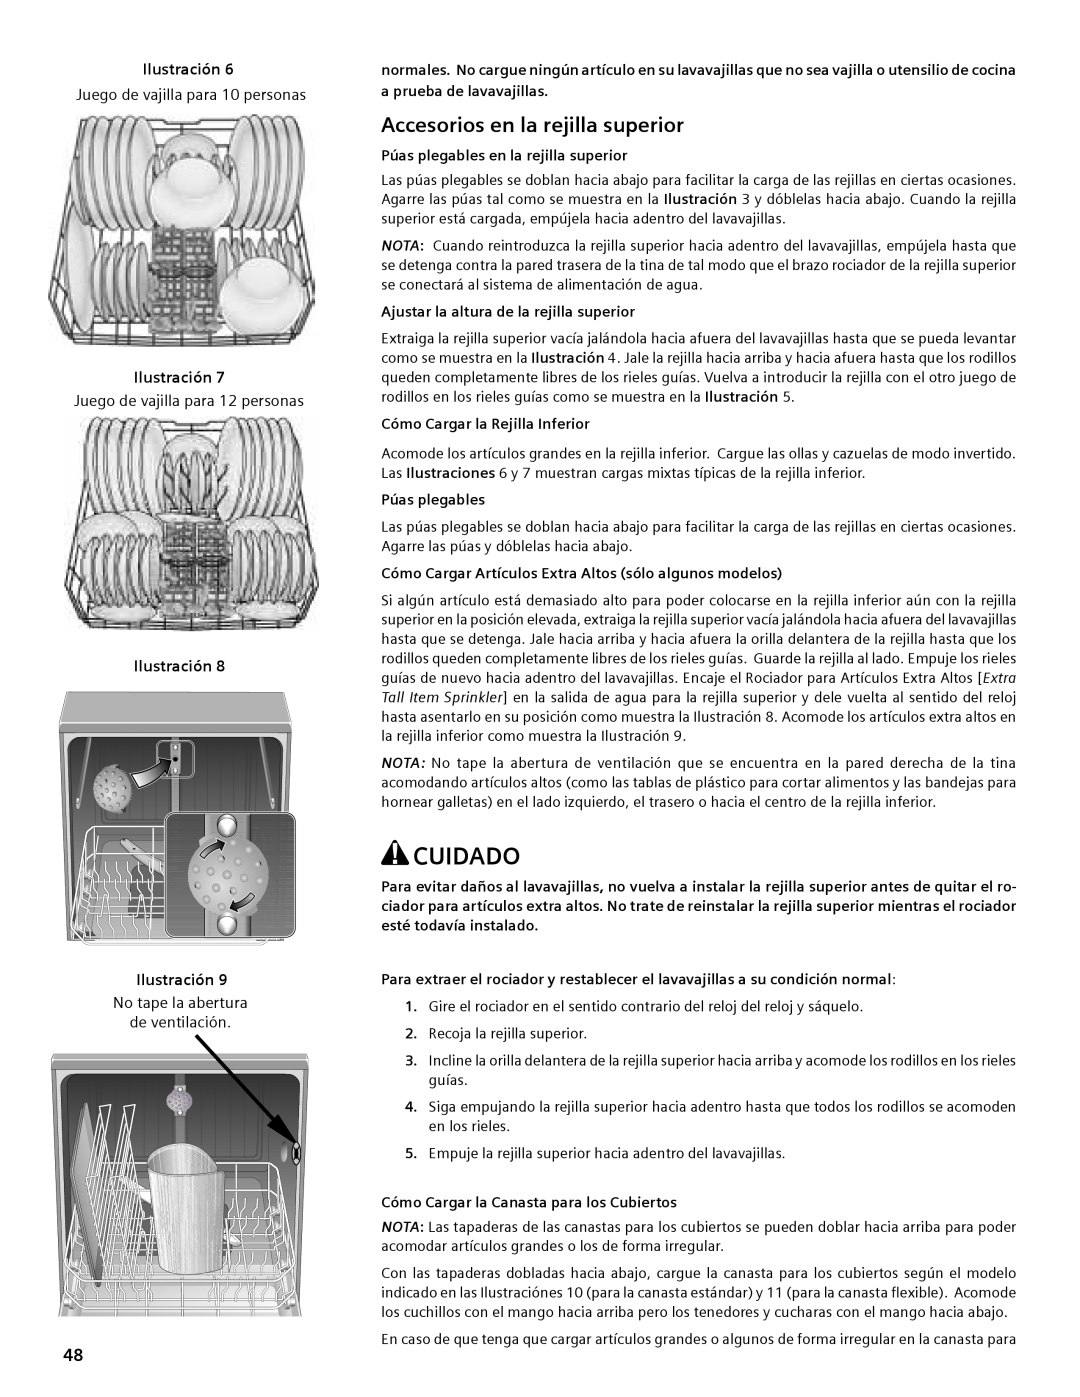 Compaq SHE55C manual Accesorios en la rejilla superior, Cuidado, Ilustración 